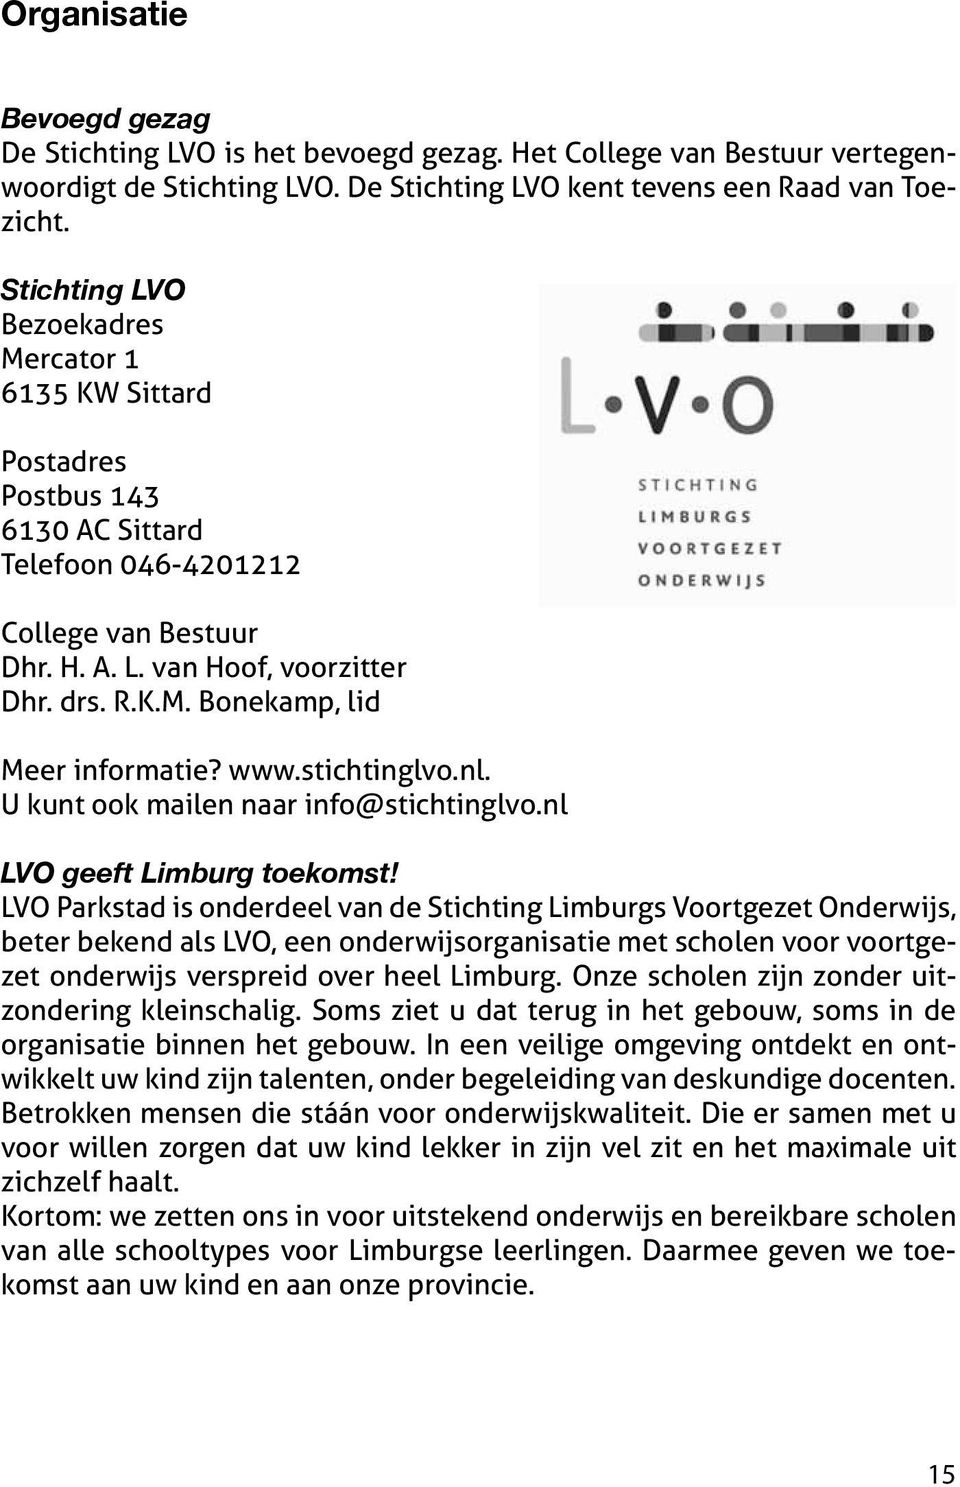 www.stichtinglvo.nl. U kunt ook mailen naar info@stichtinglvo.nl LVO geeft Limburg toekomst!